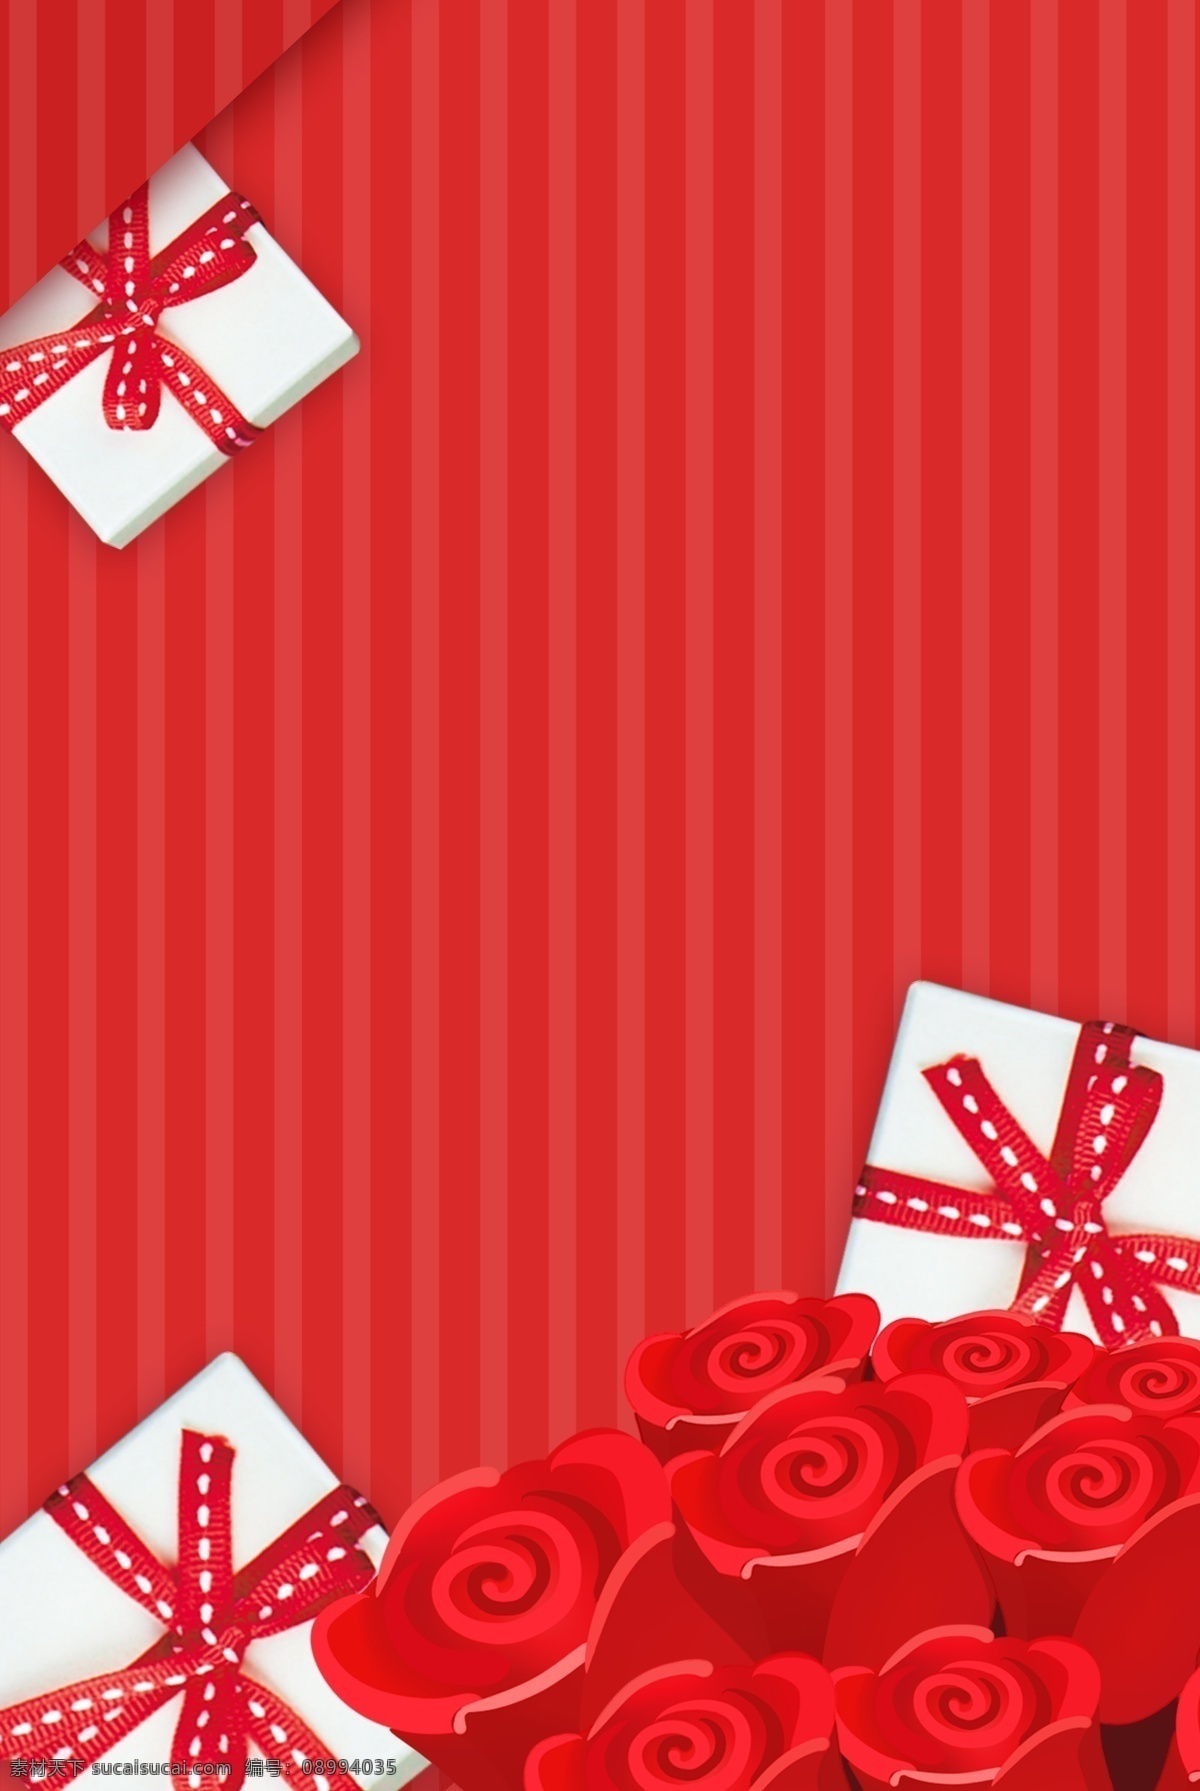 情人节 简约 红色 海报 背景 礼物 送礼 情人节活动 活动 促销背景 爱心 花朵 玫瑰花 情人节海报